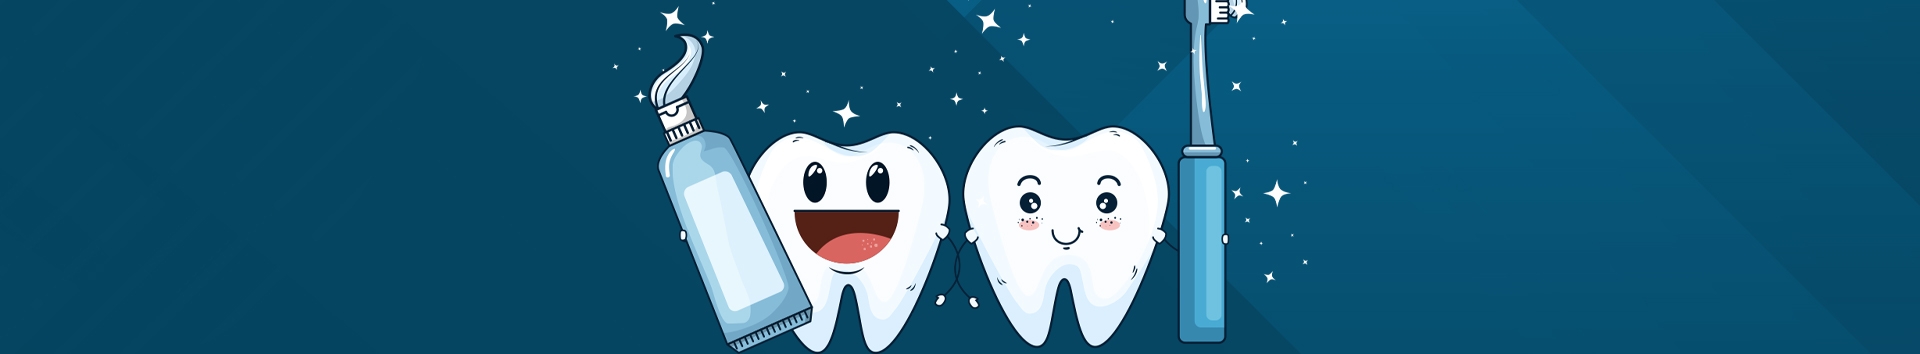 6 razões para começar a fazer tratamento dentário na DUAL CLINIC o quanto antes